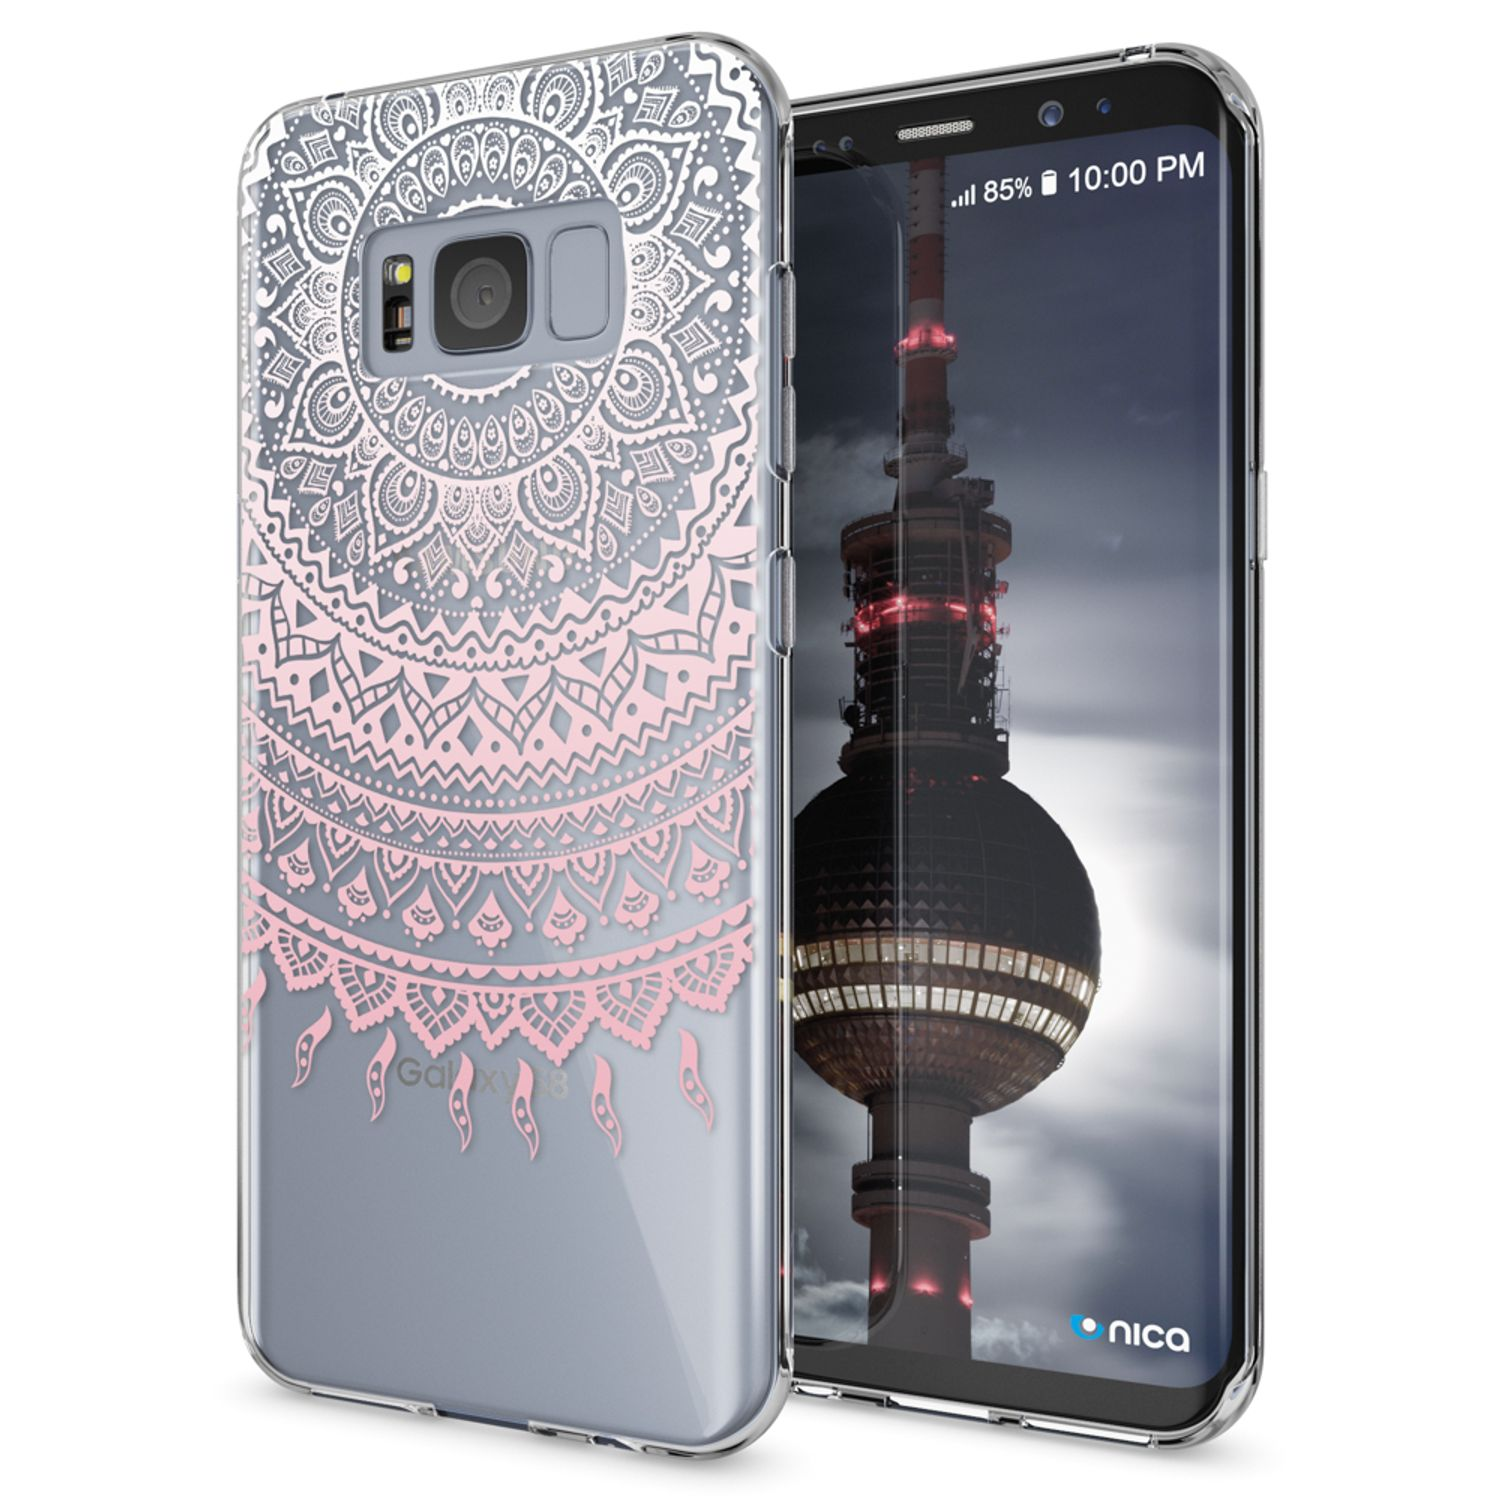 Mehrfarbig Motiv Galaxy NALIA Samsung, Hülle, S8, Backcover, Silikon